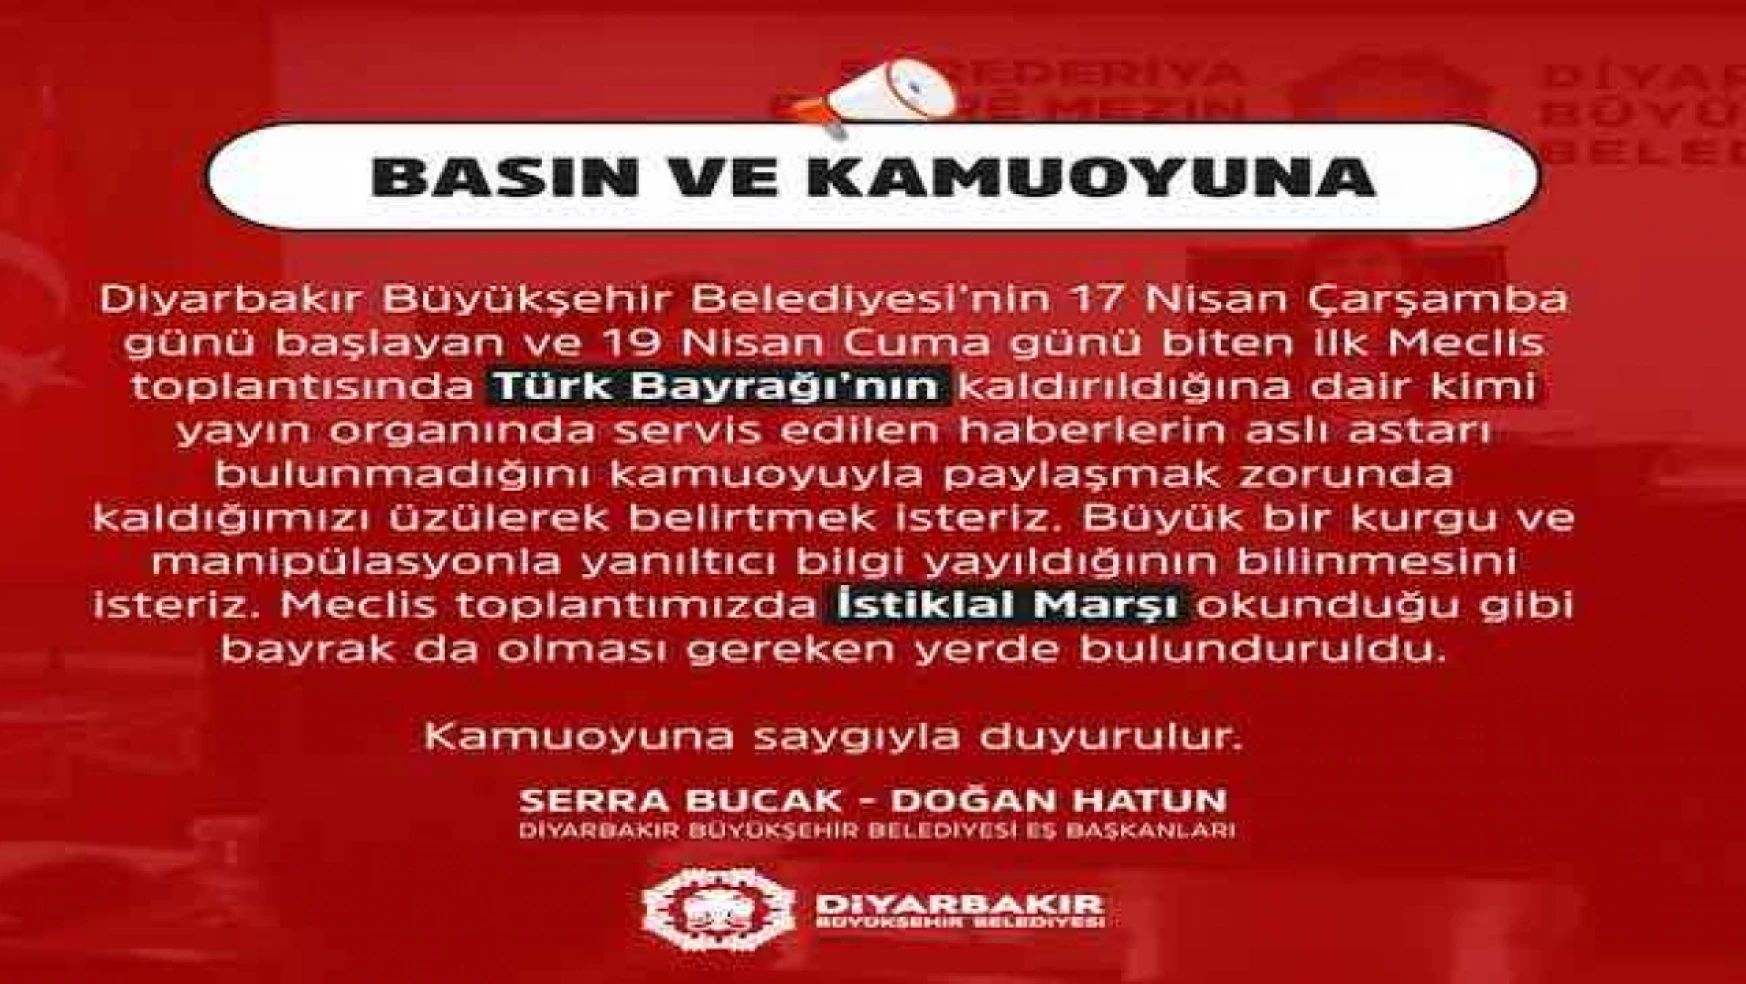 Diyarbakır Büyükşehir Belediyesi: İstiklal Marşı okundu, bayrak da olması gereken yerde bulunduruldu